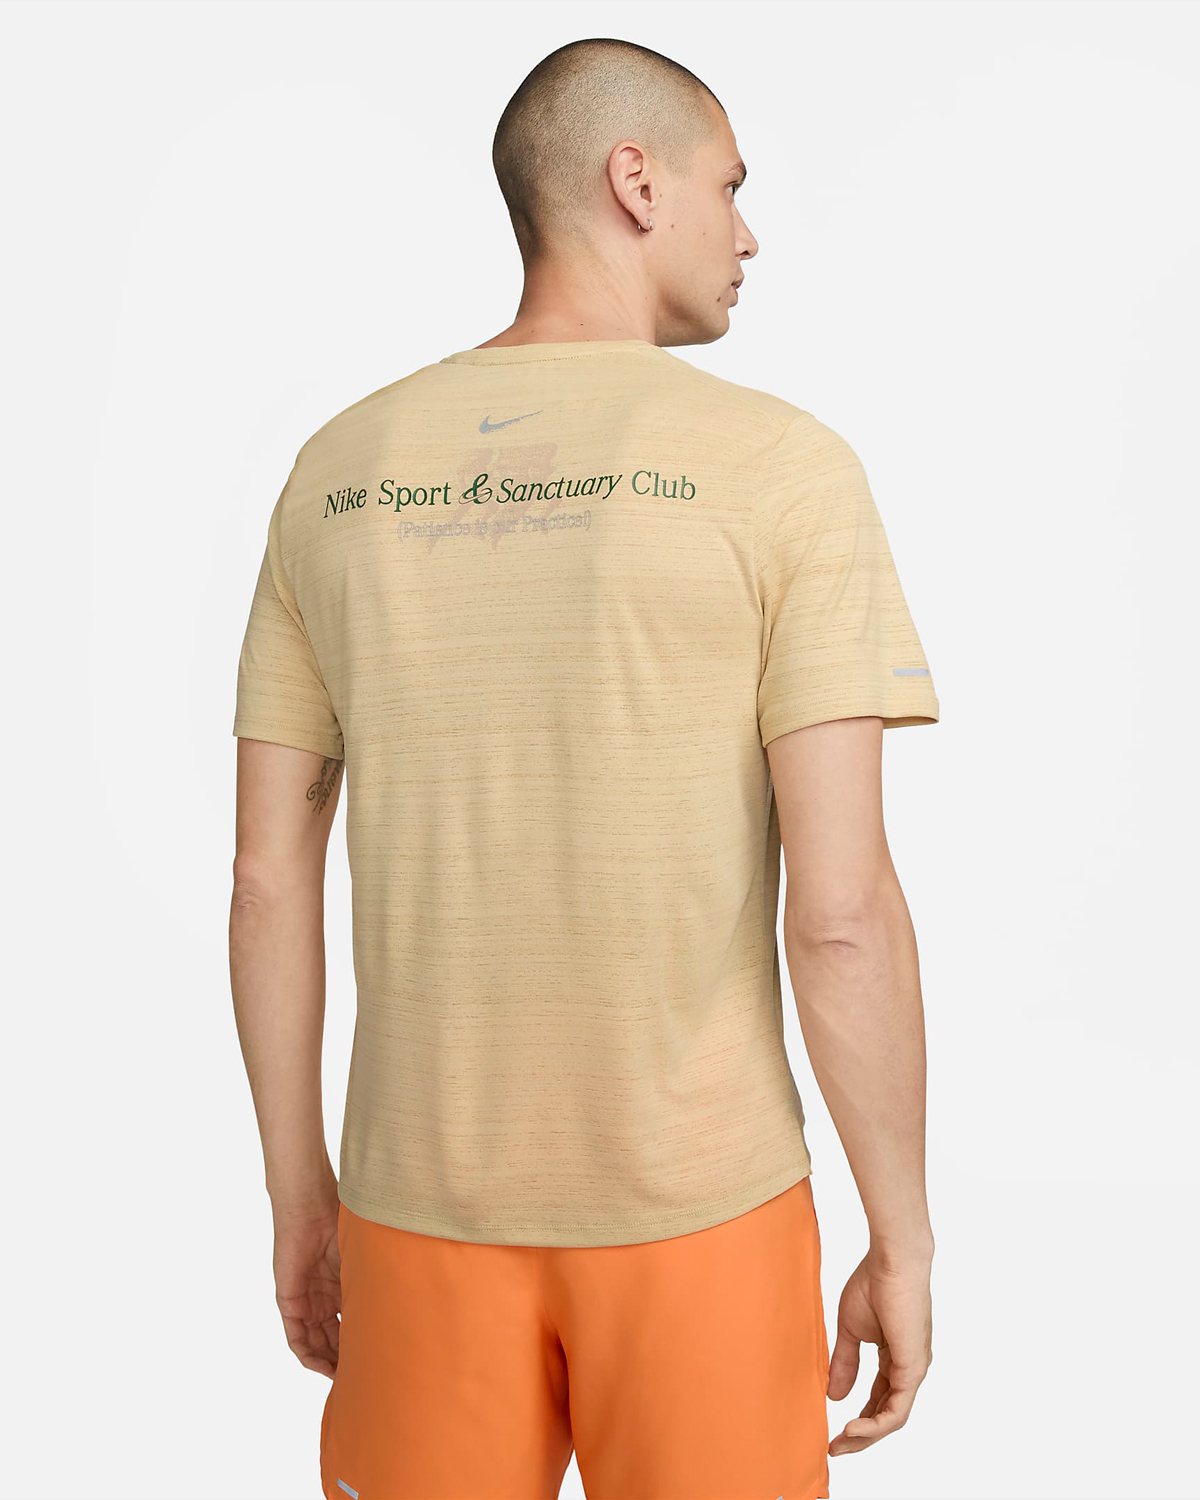 Nike-Miler-Sport-Sanctuary-T-Shirt-Sesame-Orange-2